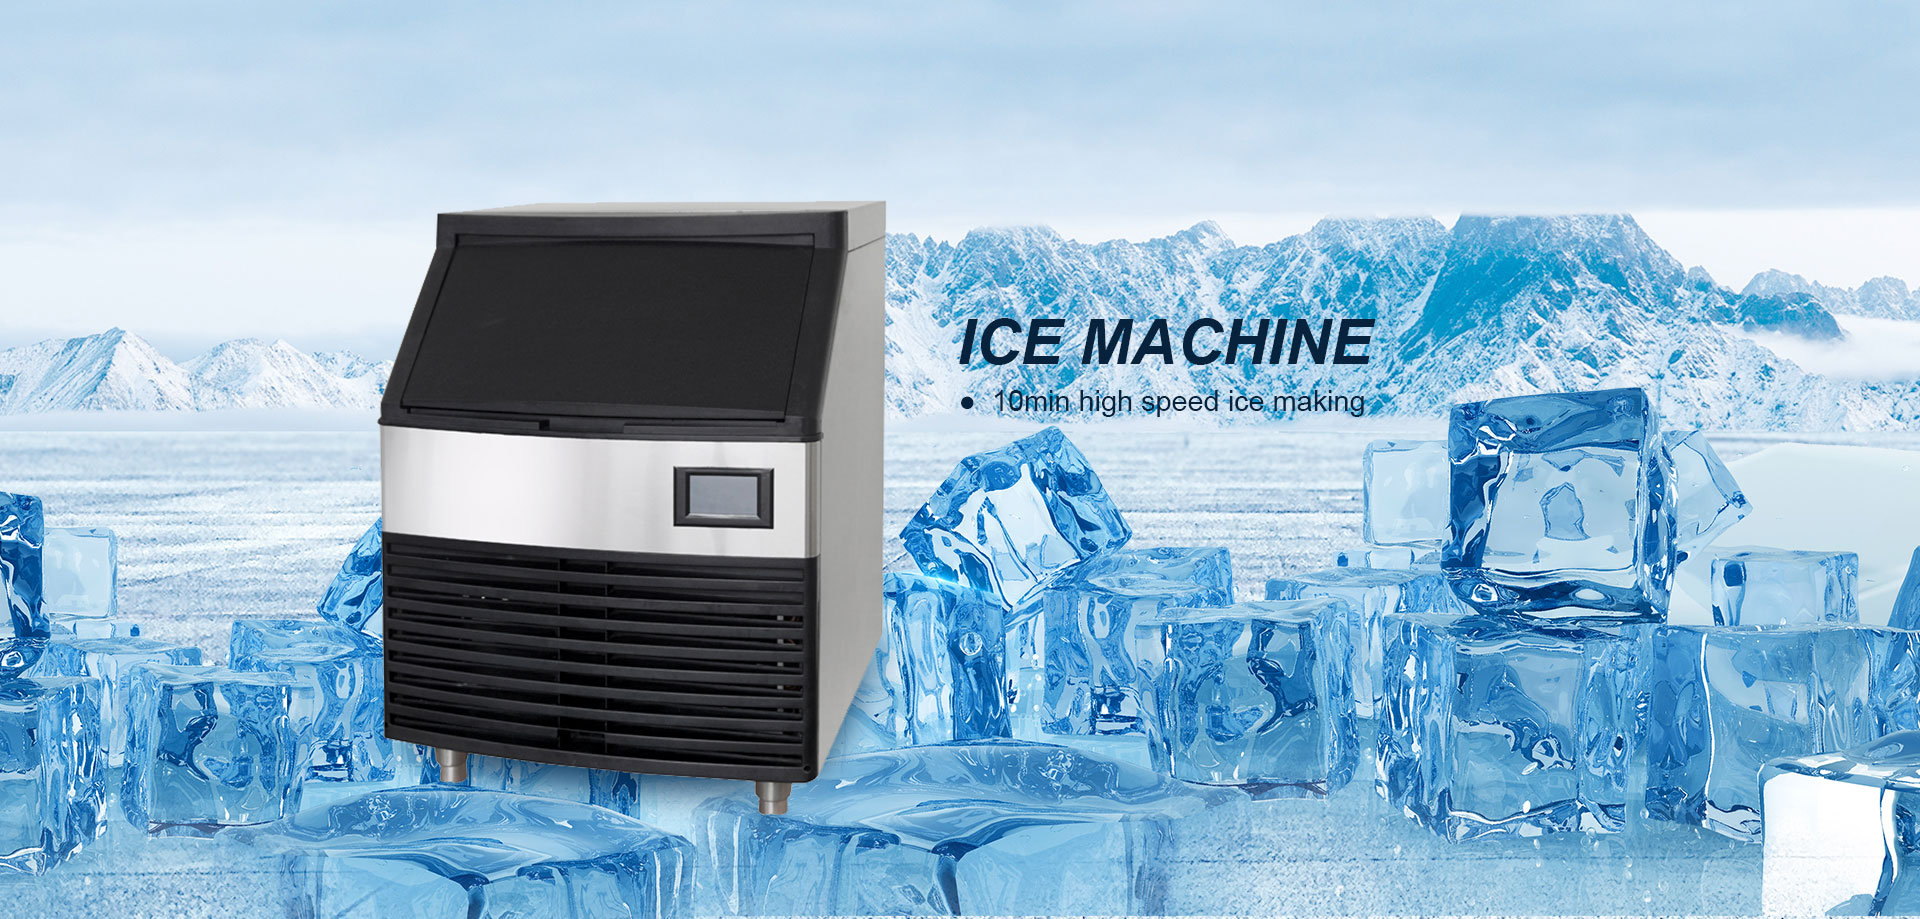 ICE MACHINE